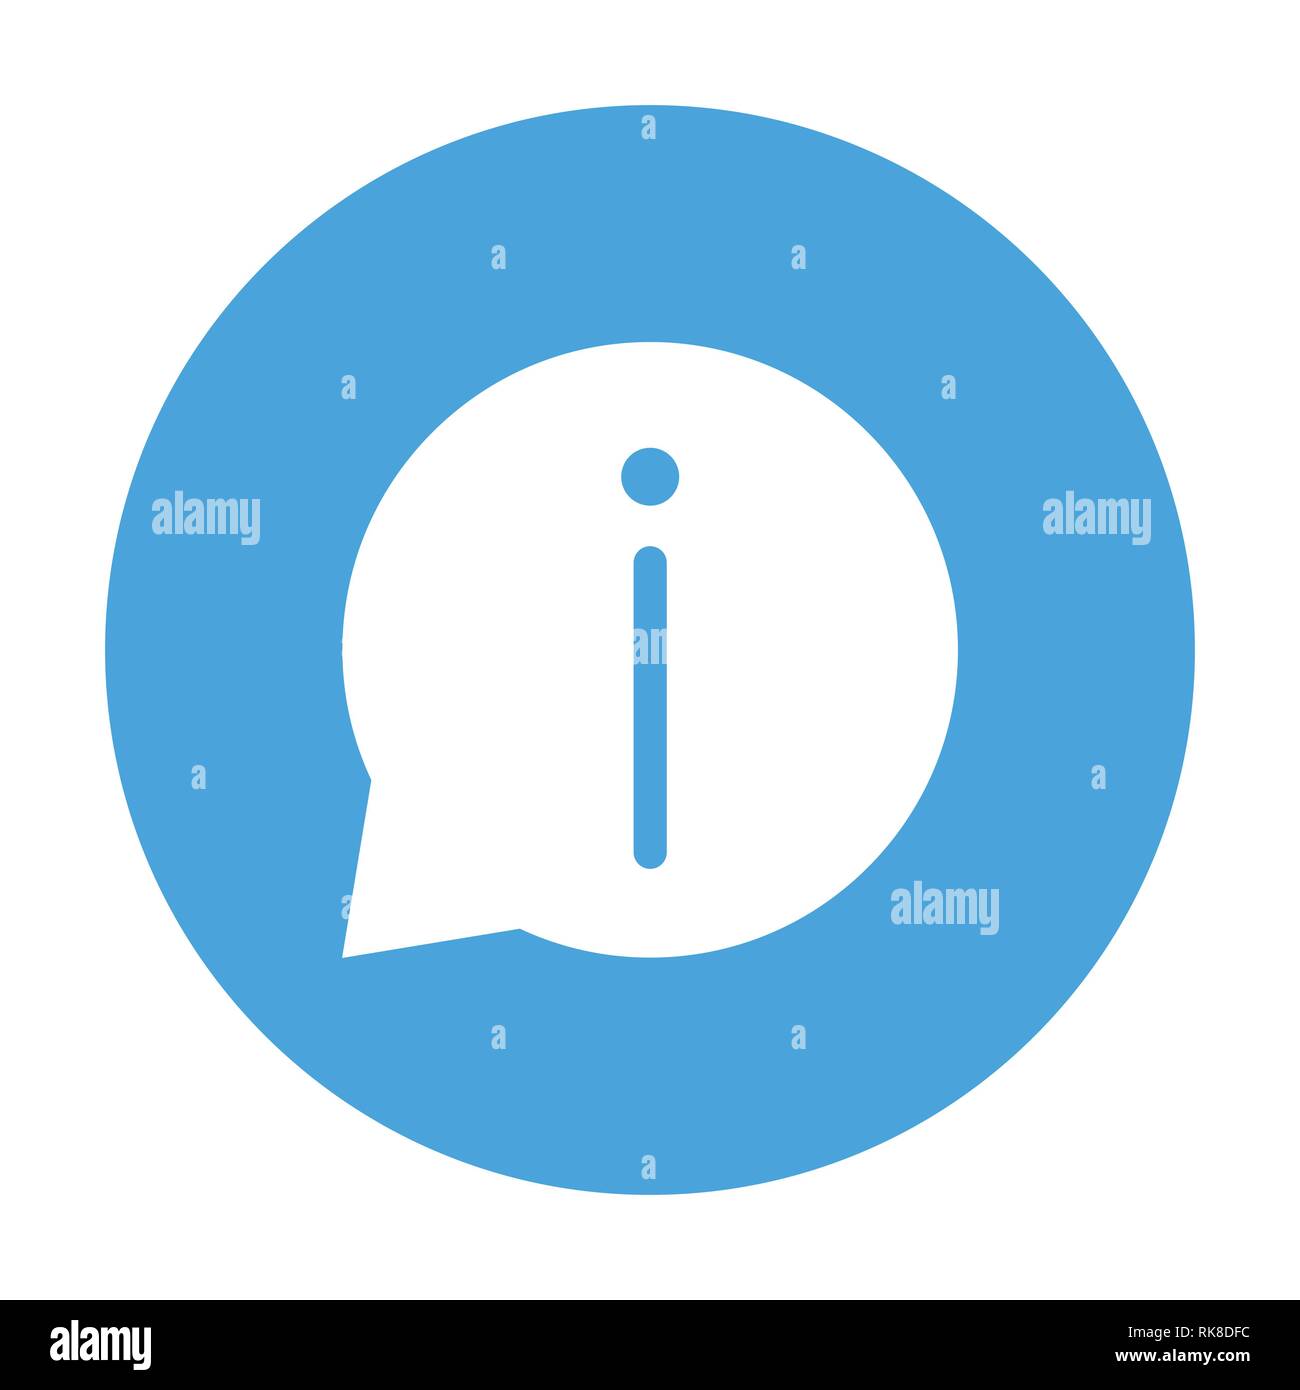 Vecteur d'info inscrivez-vous à l'icône de la ligne du cercle, symbole à l'intérieur d'un cercle bleu, sur fond blanc. Vector design iconique. Illustration de Vecteur